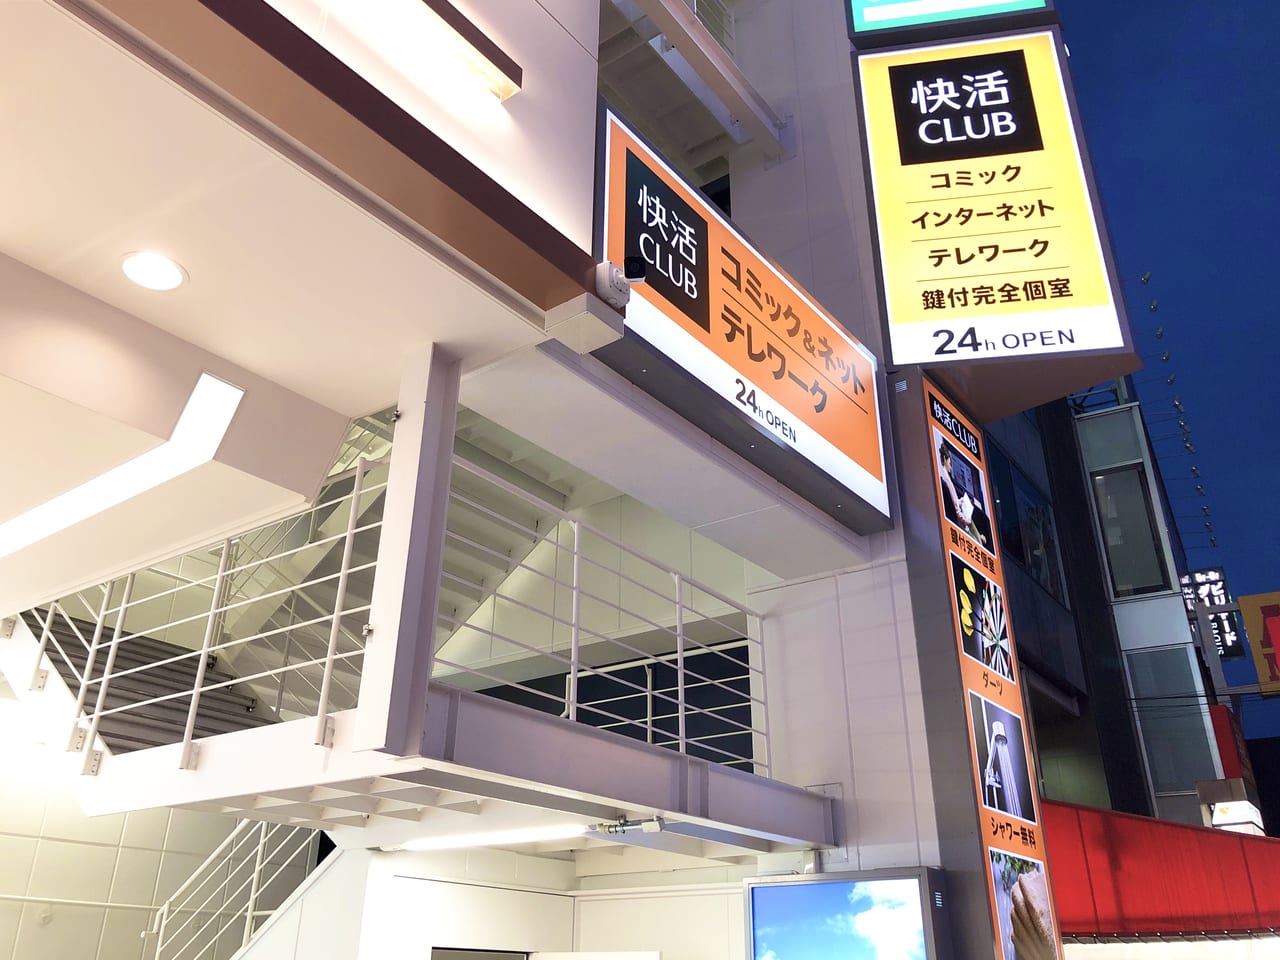 小田急町田駅前店』が7月1日から営業開始します！快適すぎて部屋から出てこられなくなるかも